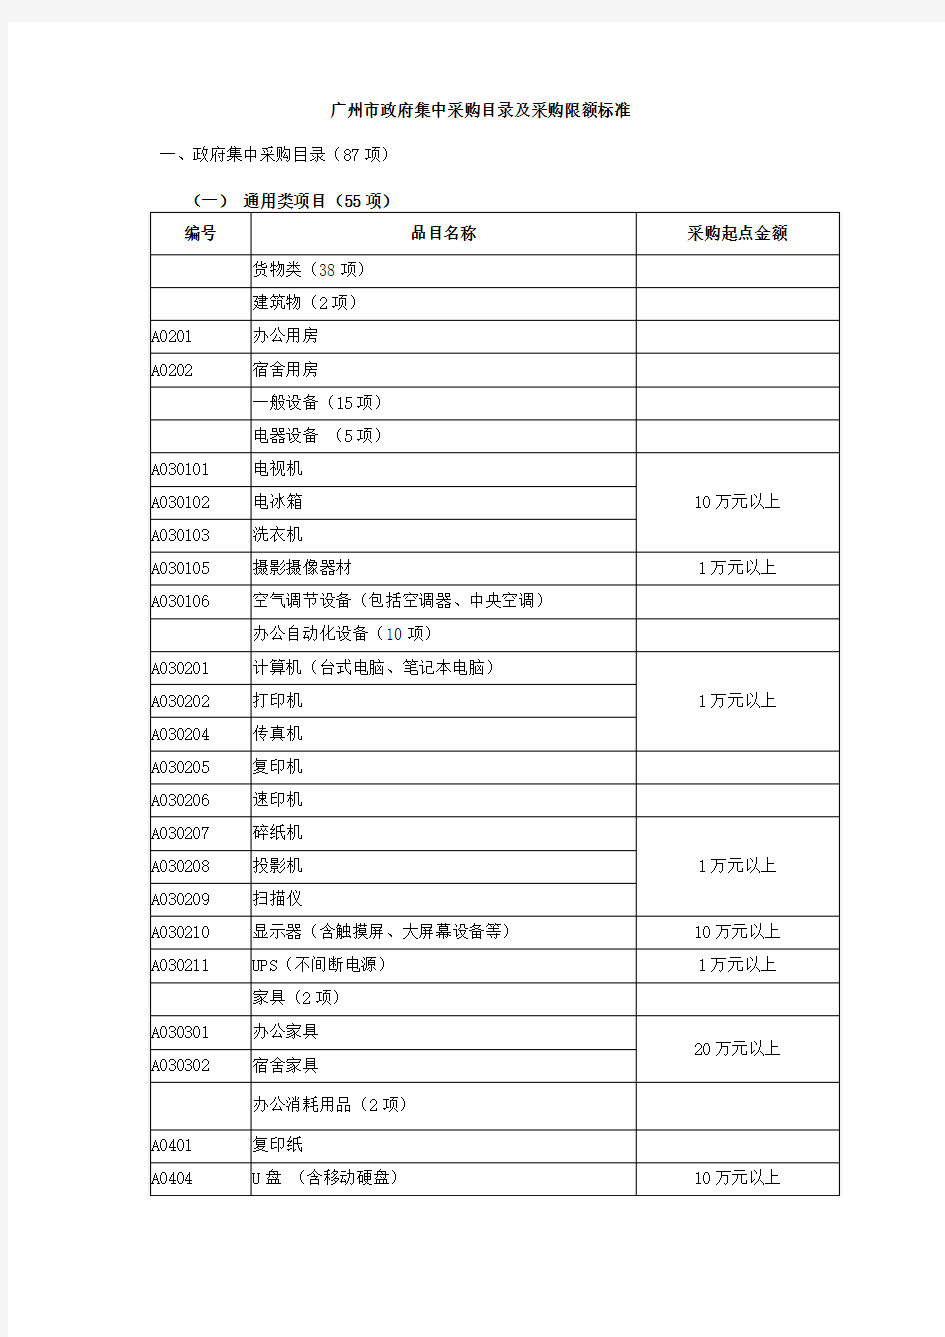 广州市政府集中采购目录及采购限额标准